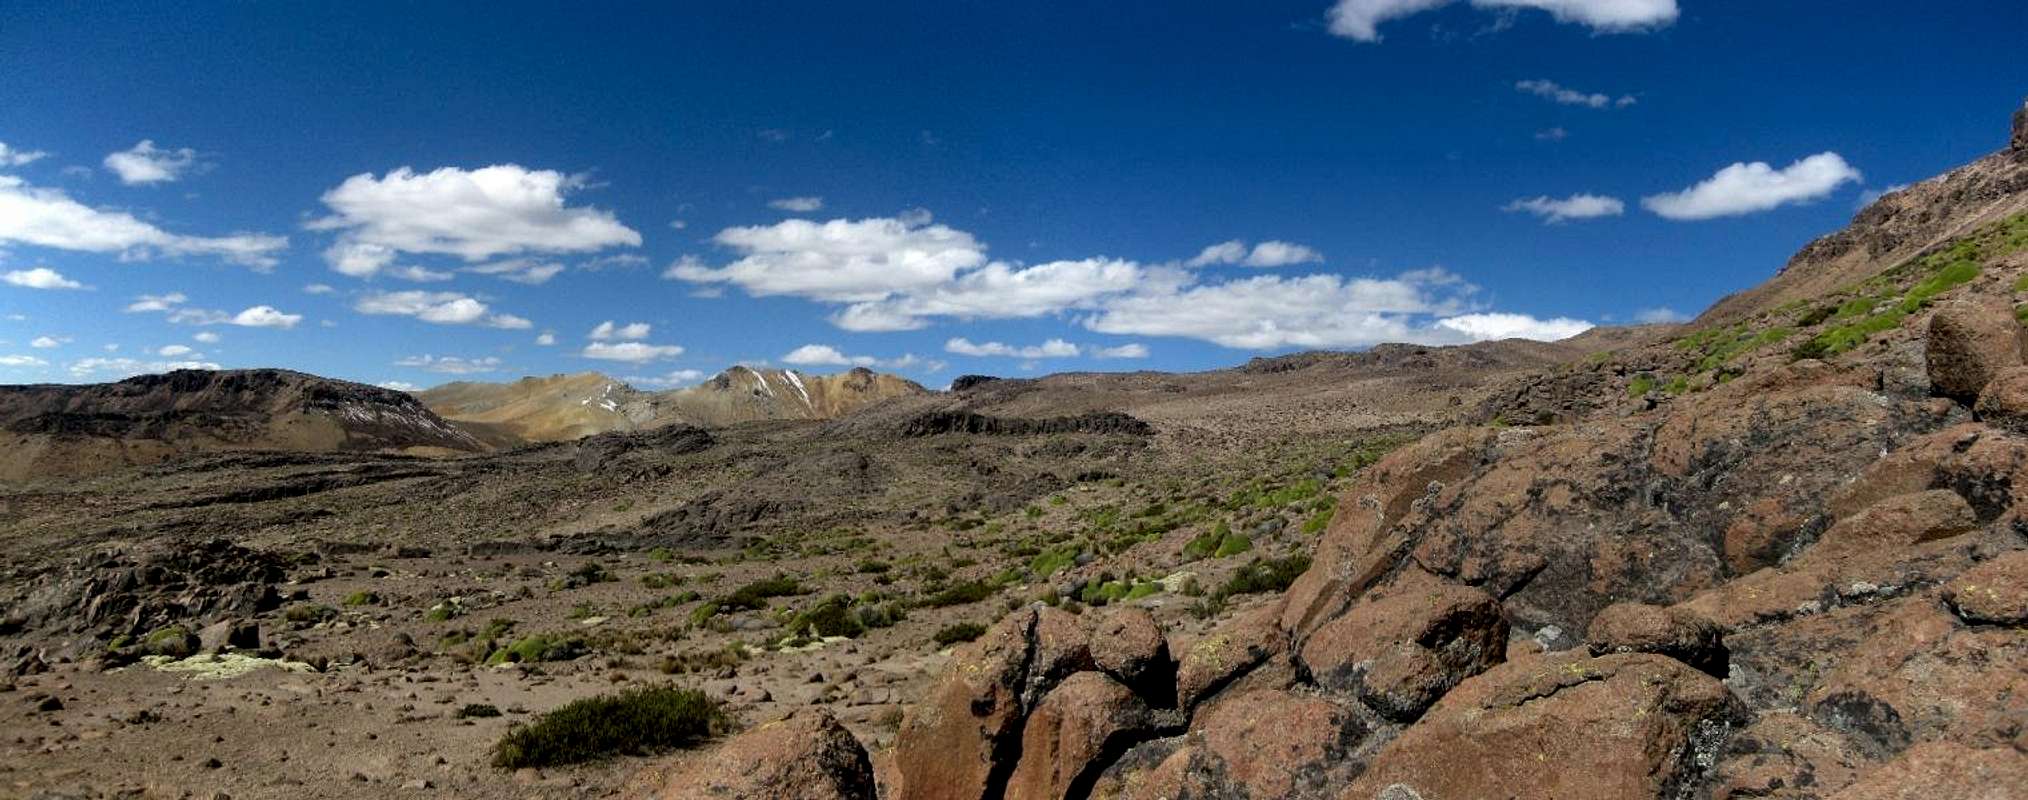 El Misti : Climbing, Hiking & Mountaineering : SummitPost